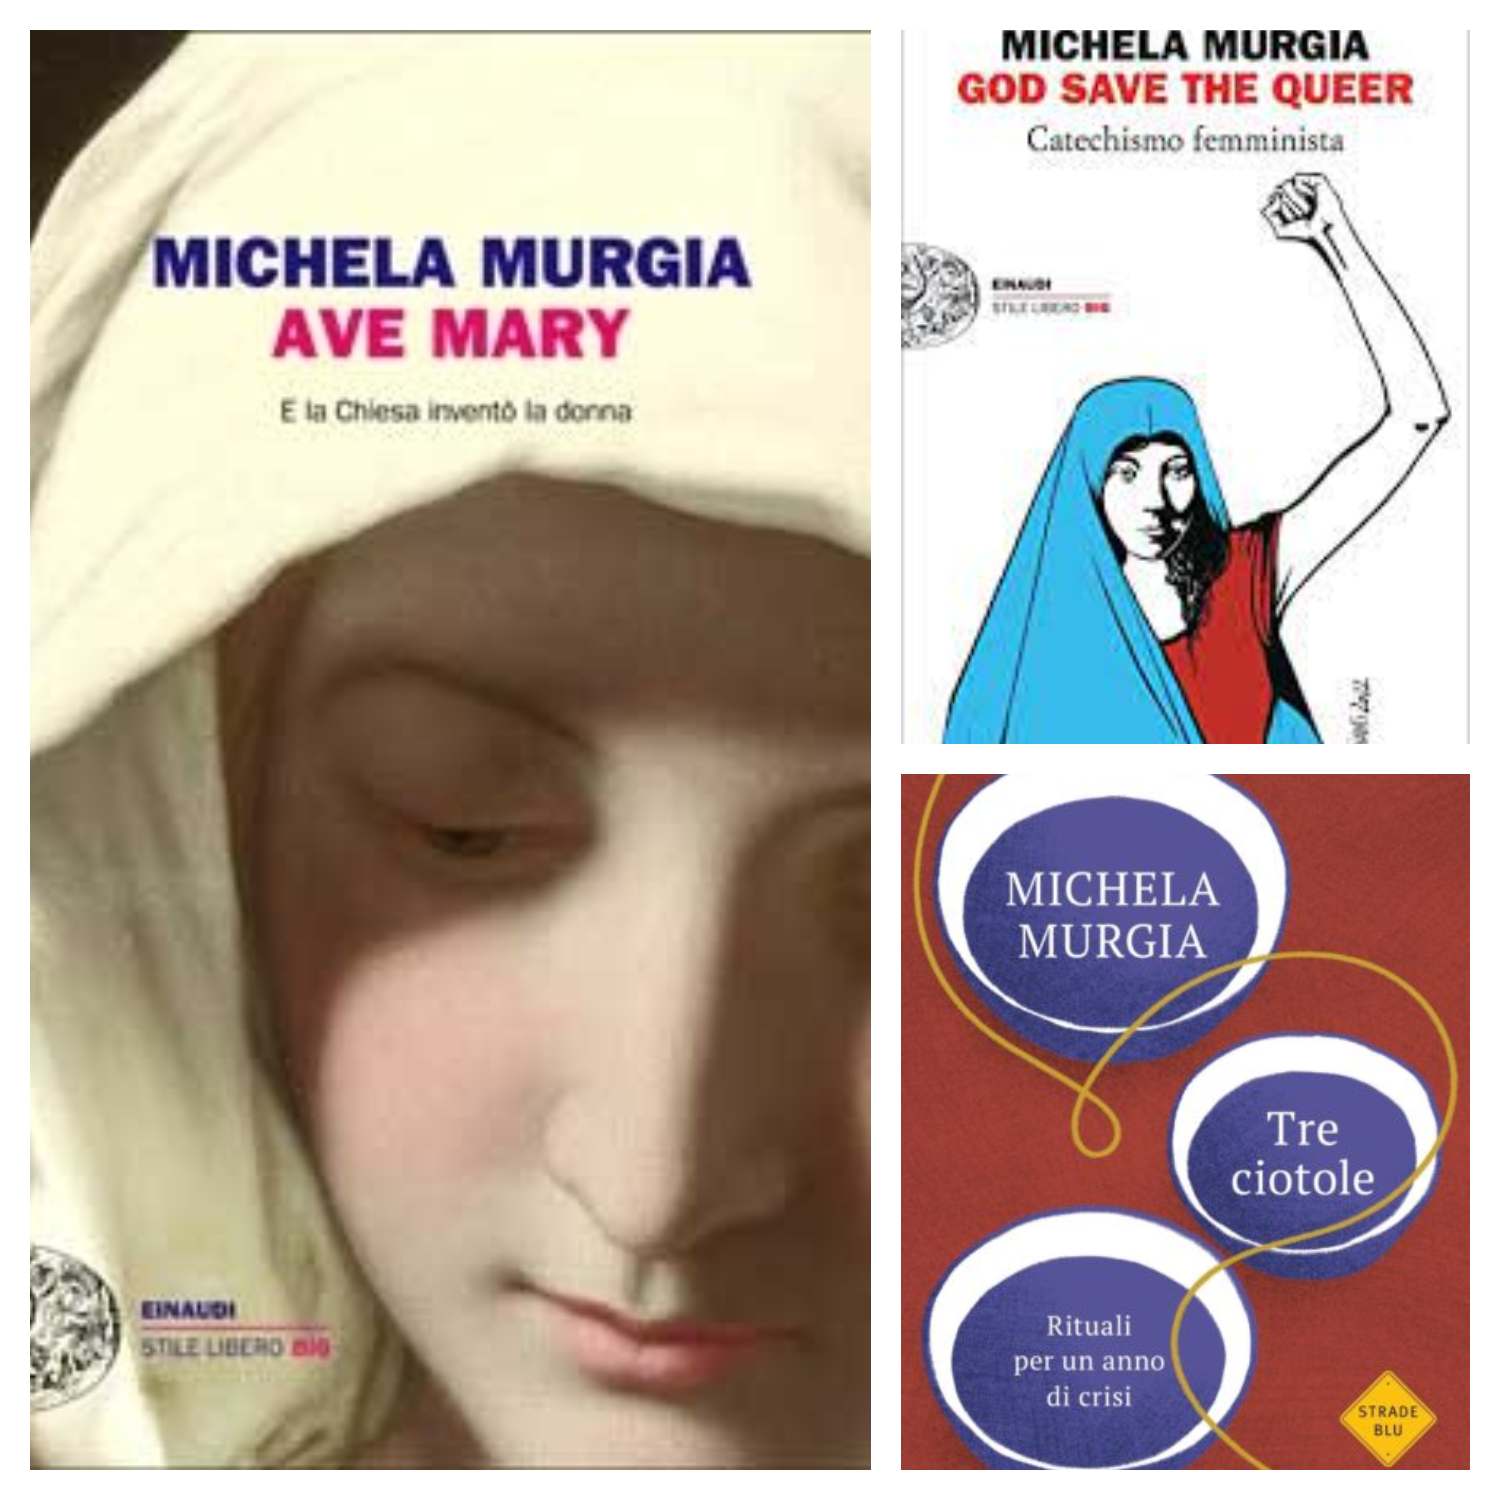 Copertine dei libri di Michela Murgia "Ave MAry", "God save the Queer" e "Tre ciotole"